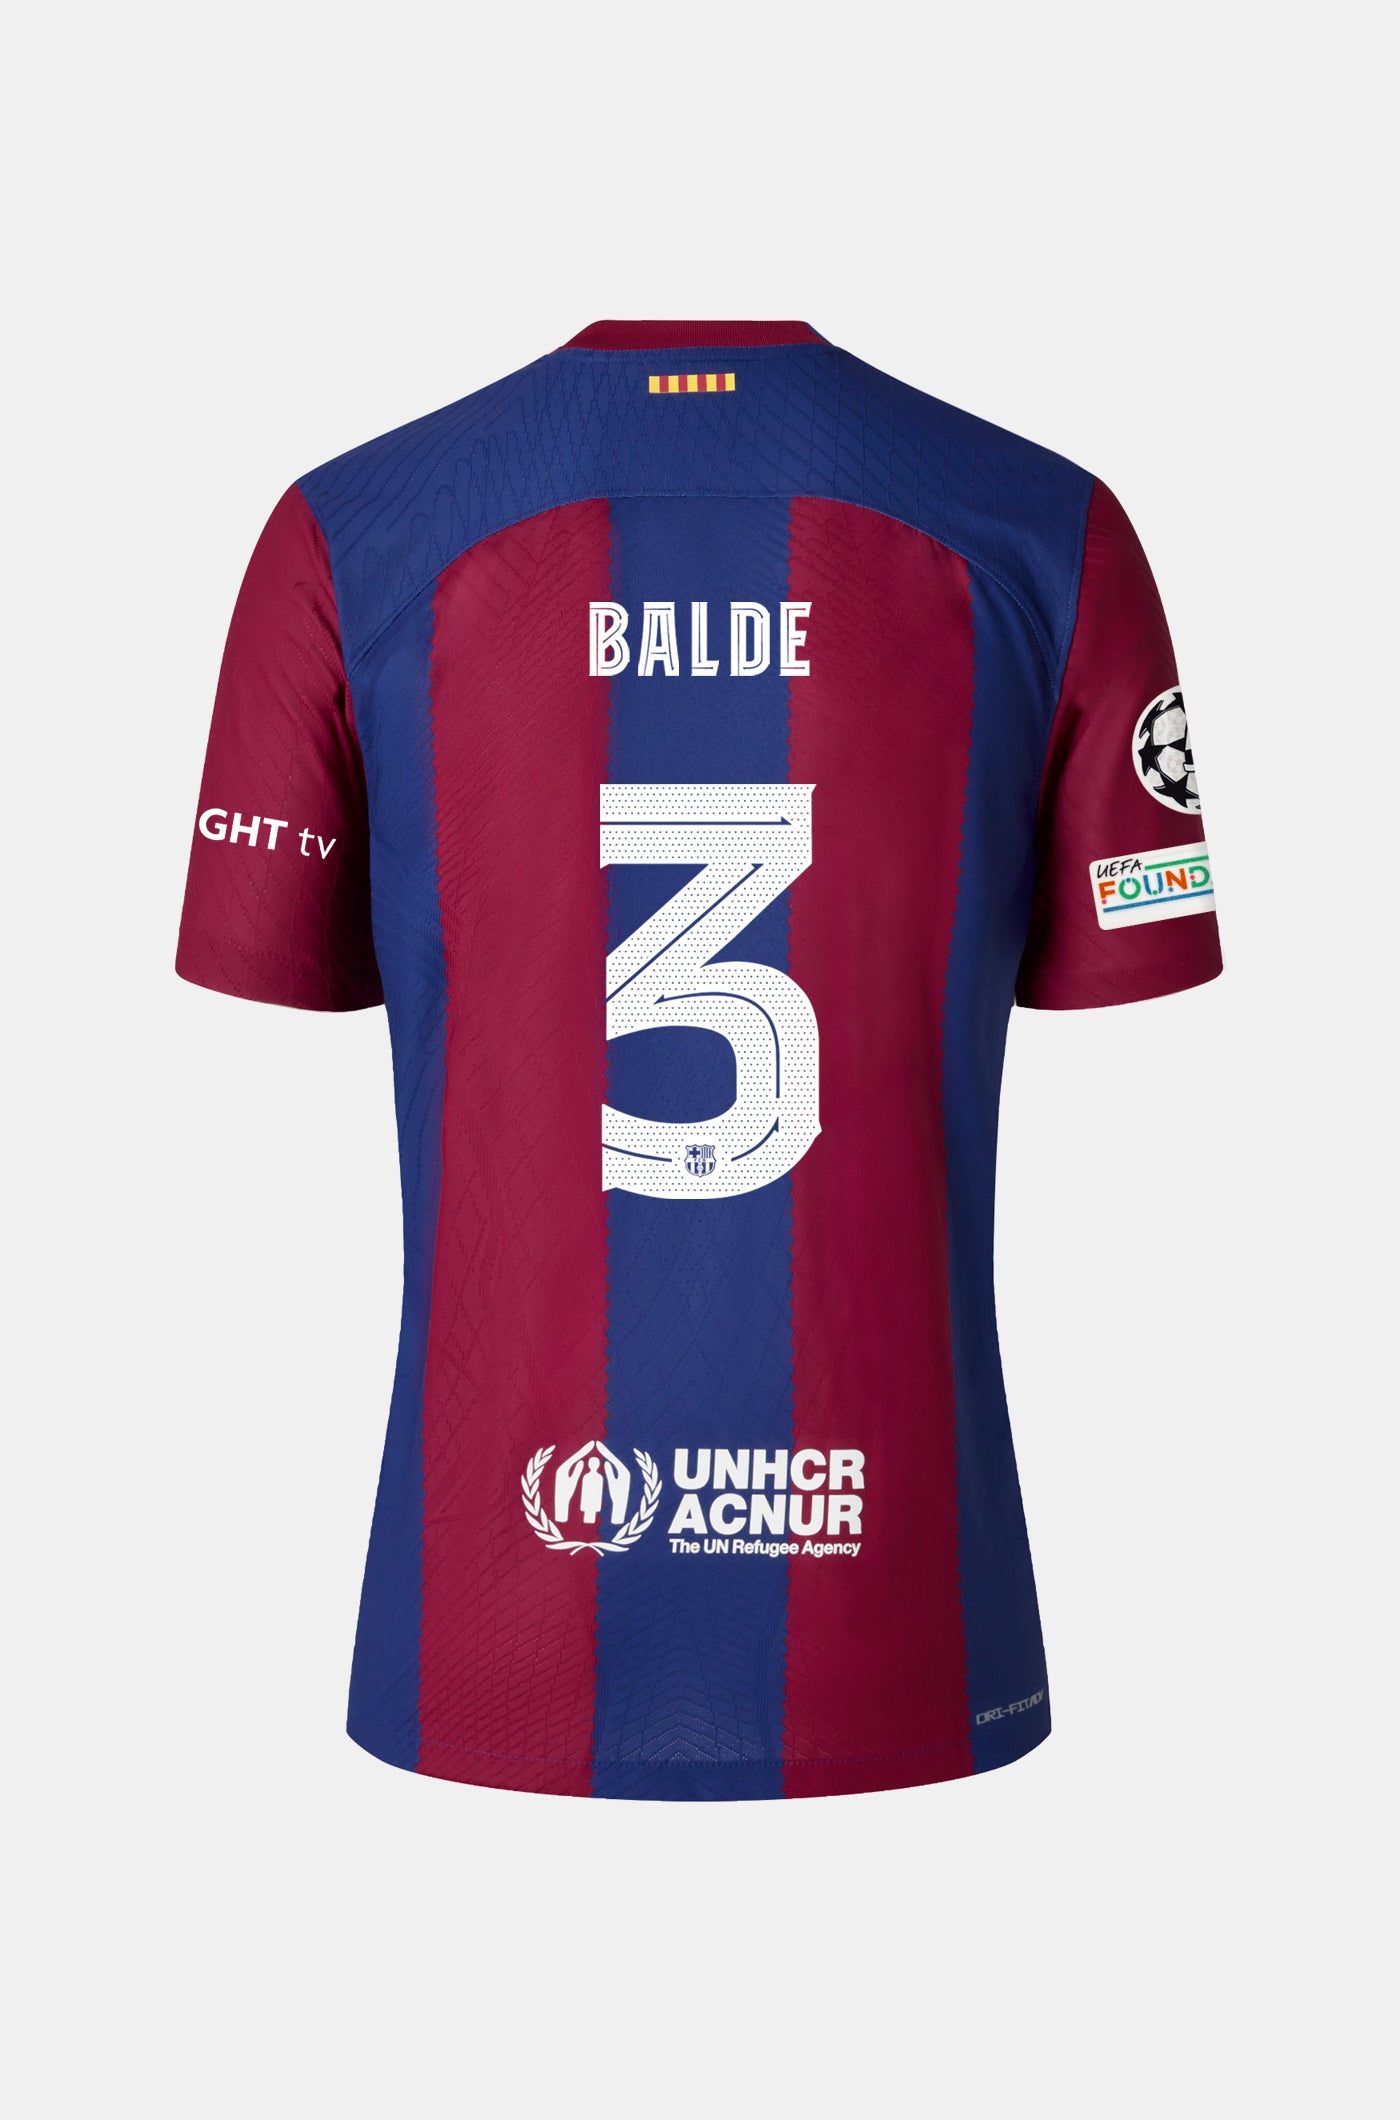 UCL FC Barcelona home shirt 23/24 - Women - BALDE